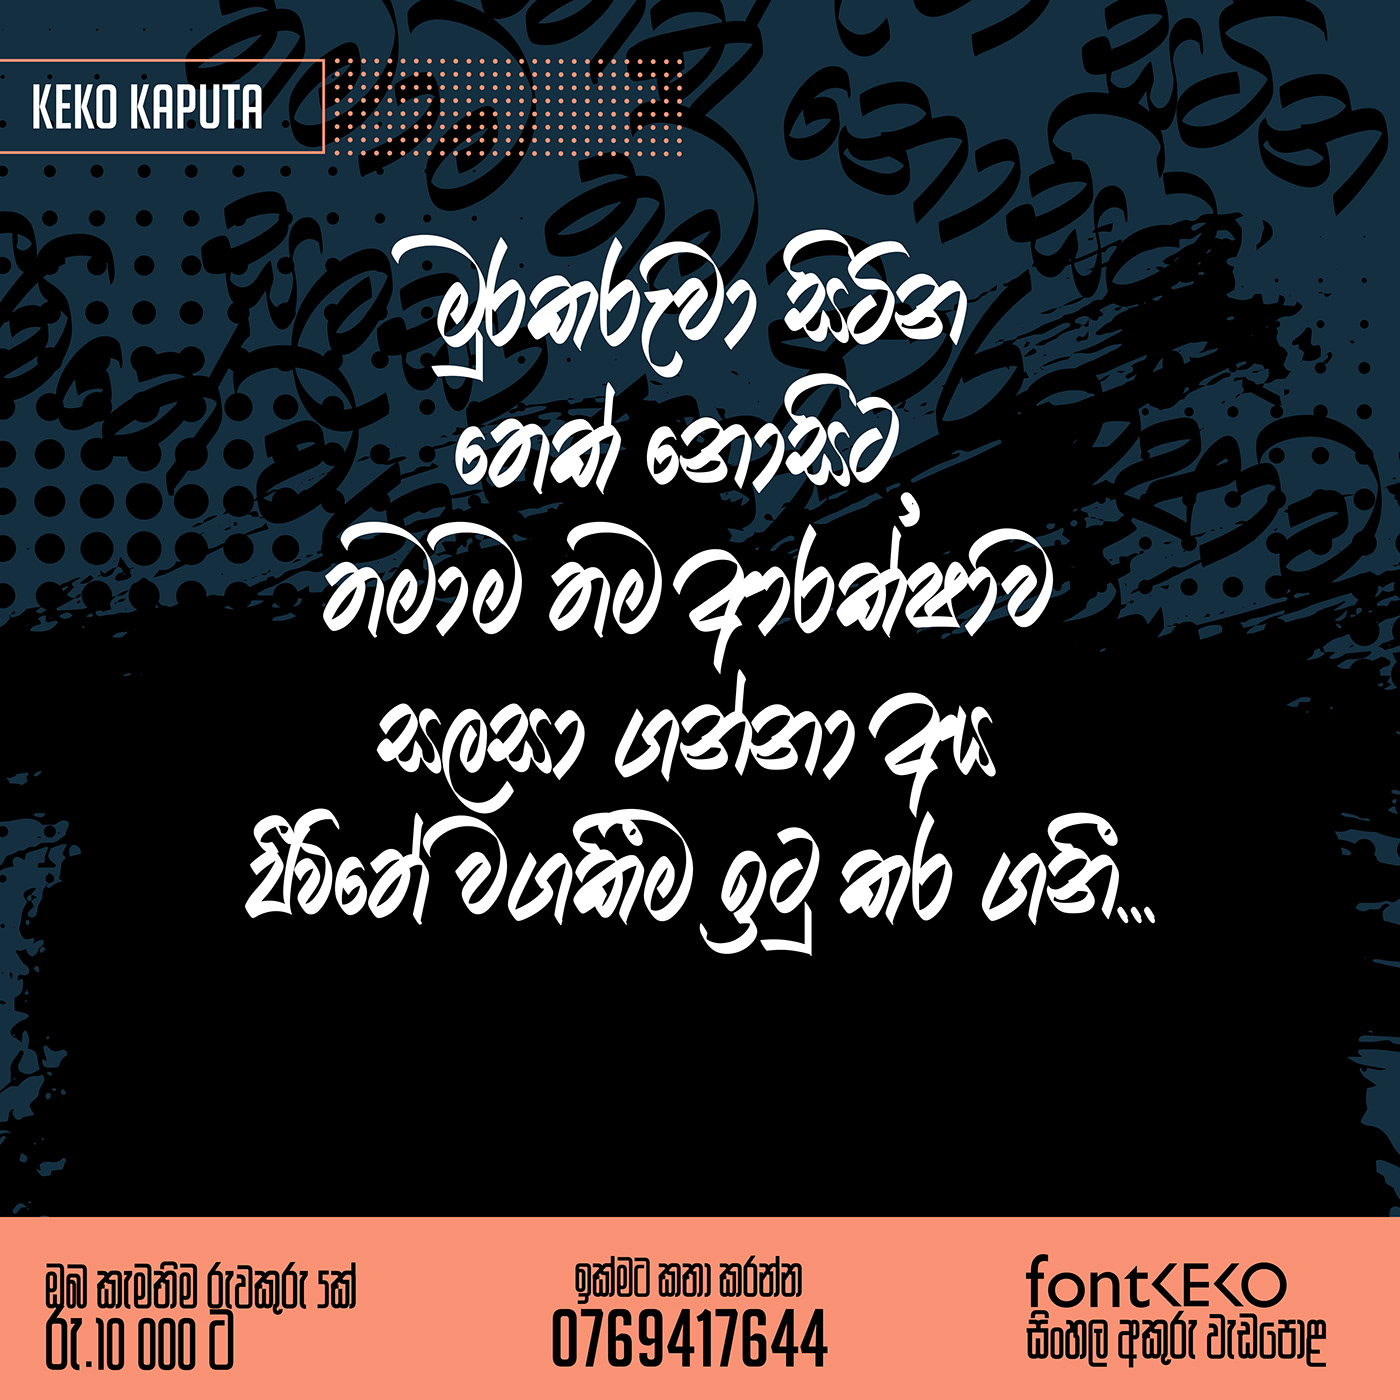 akuru chaminda kumara font font keko ruwakuru sinhala akuru Sinhala font Sri lanka Typeface typography  